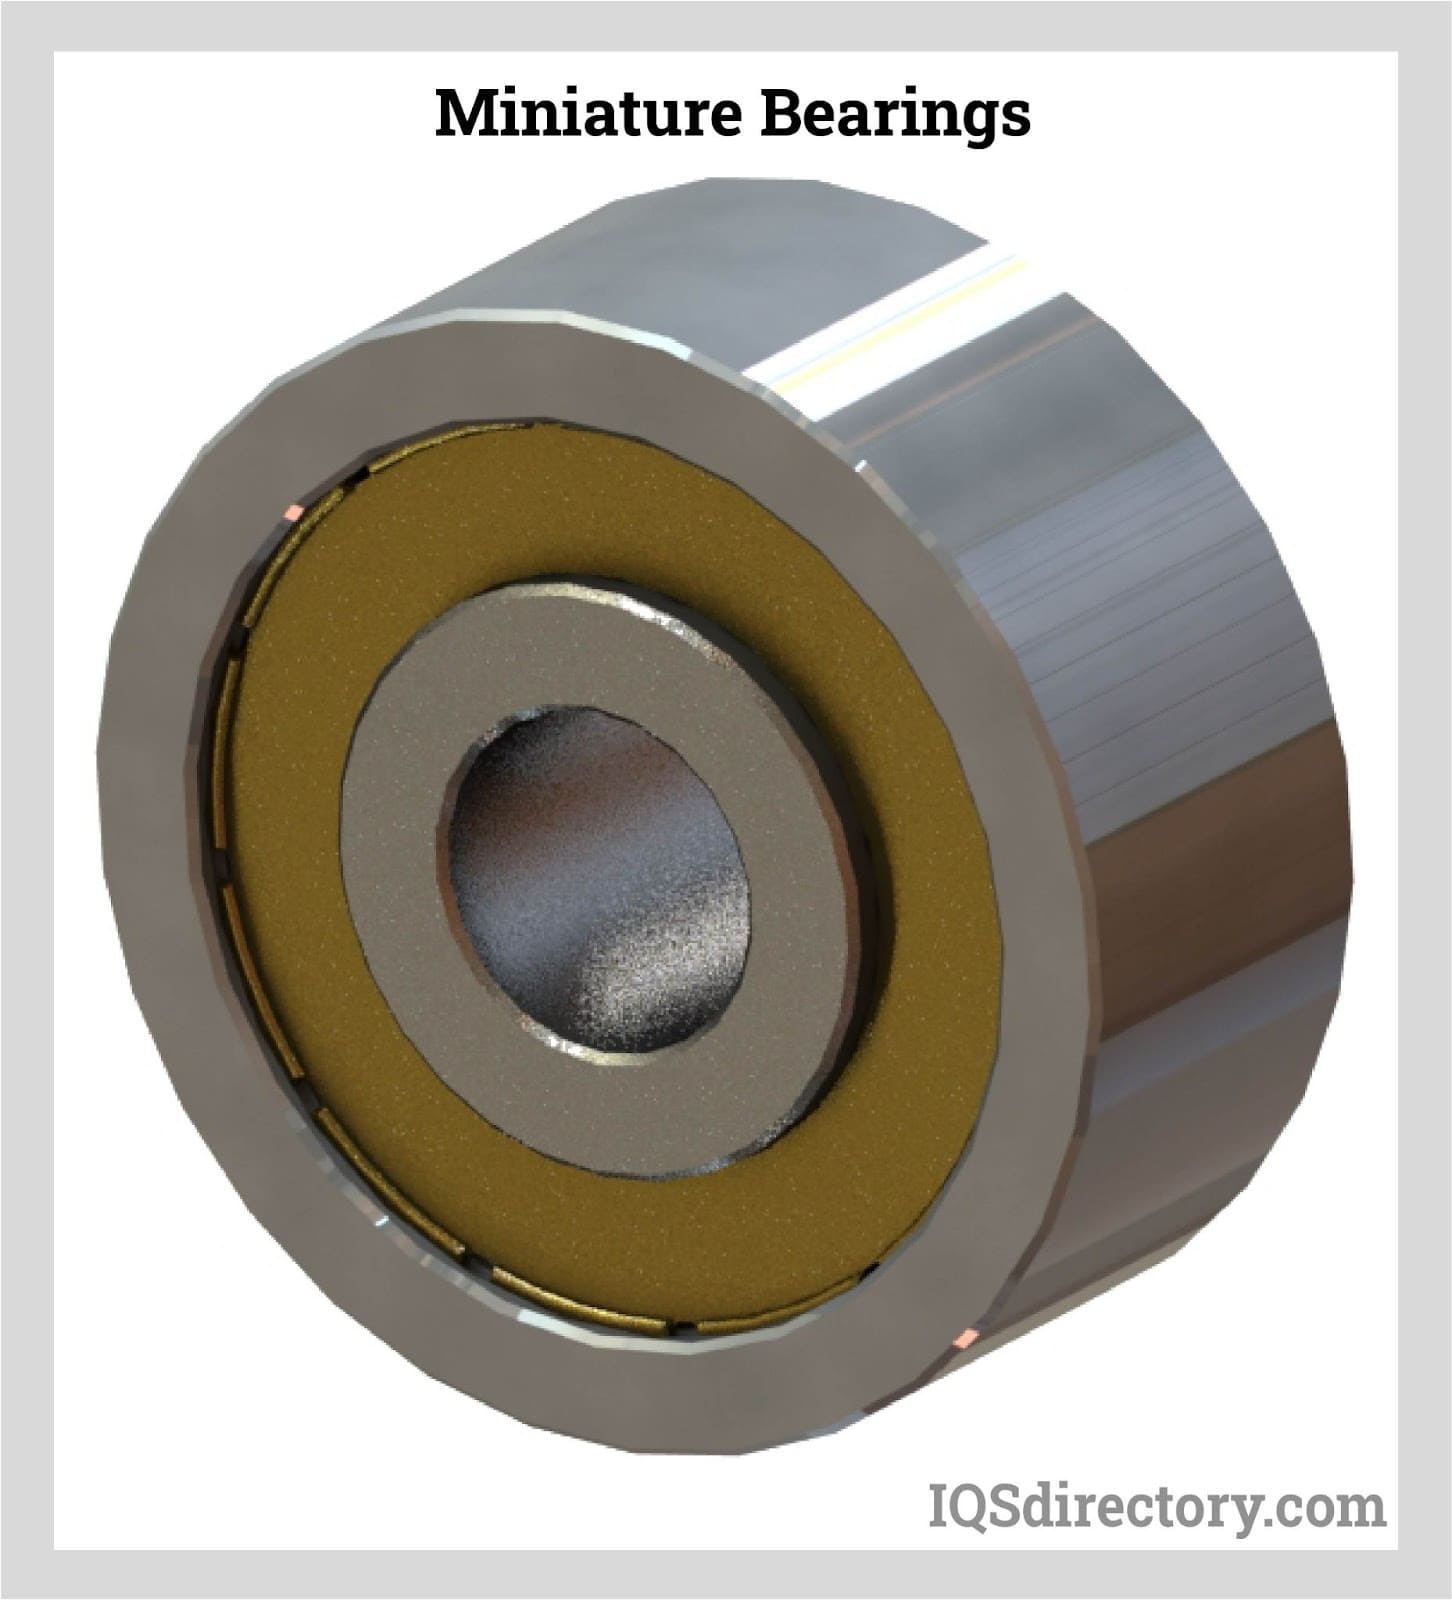 Miniature Bearings